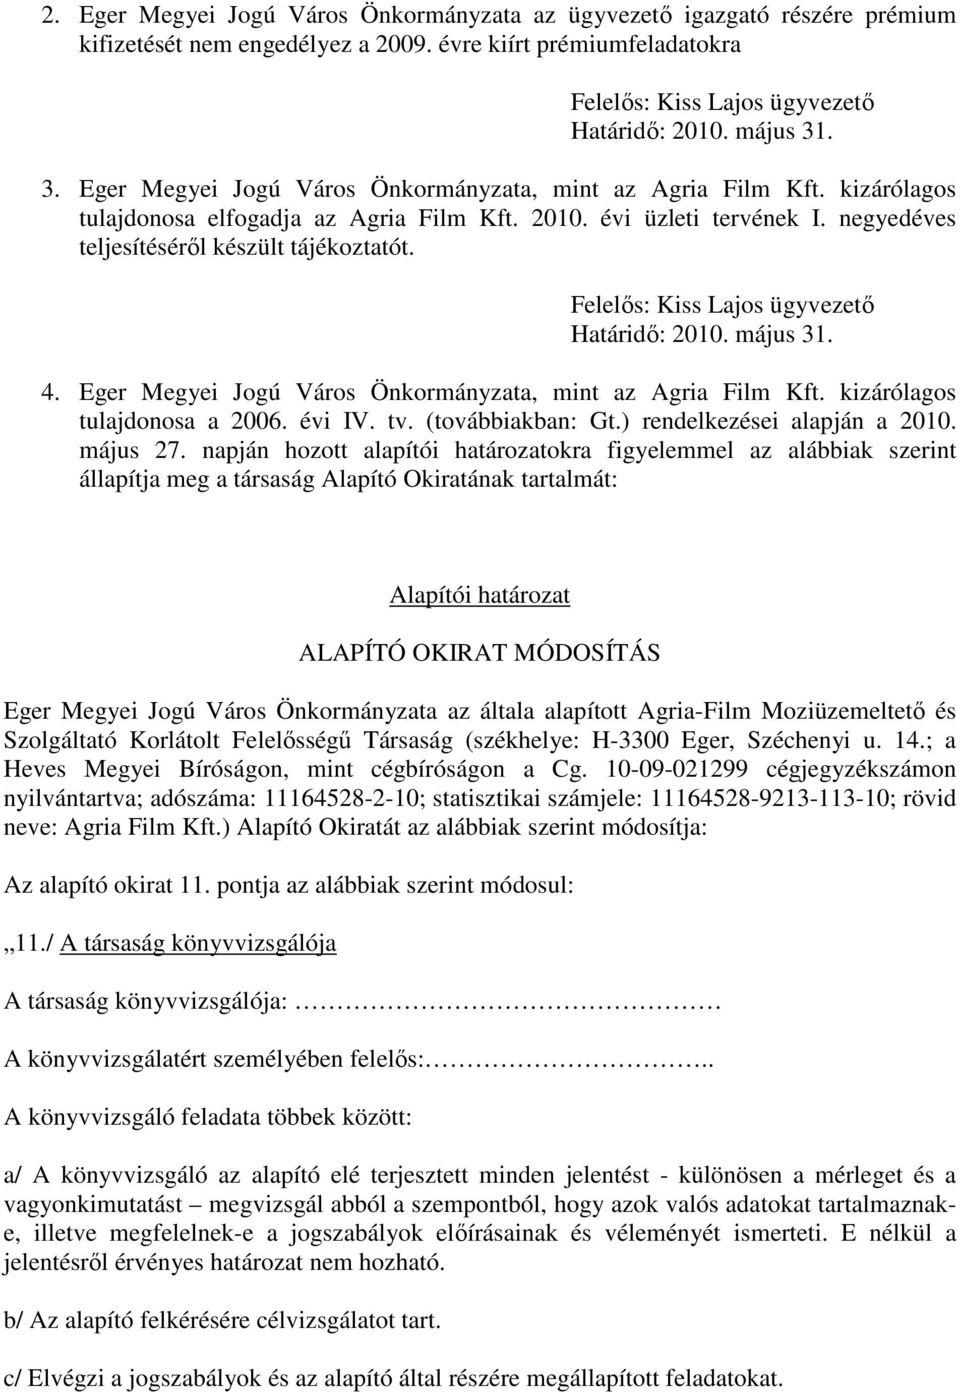 Felelős: Kiss Lajos ügyvezető Határidő: 2010. május 31. 4. Eger Megyei Jogú Város Önkormányzata, mint az Agria Film Kft. kizárólagos tulajdonosa a 2006. évi IV. tv. (továbbiakban: Gt.